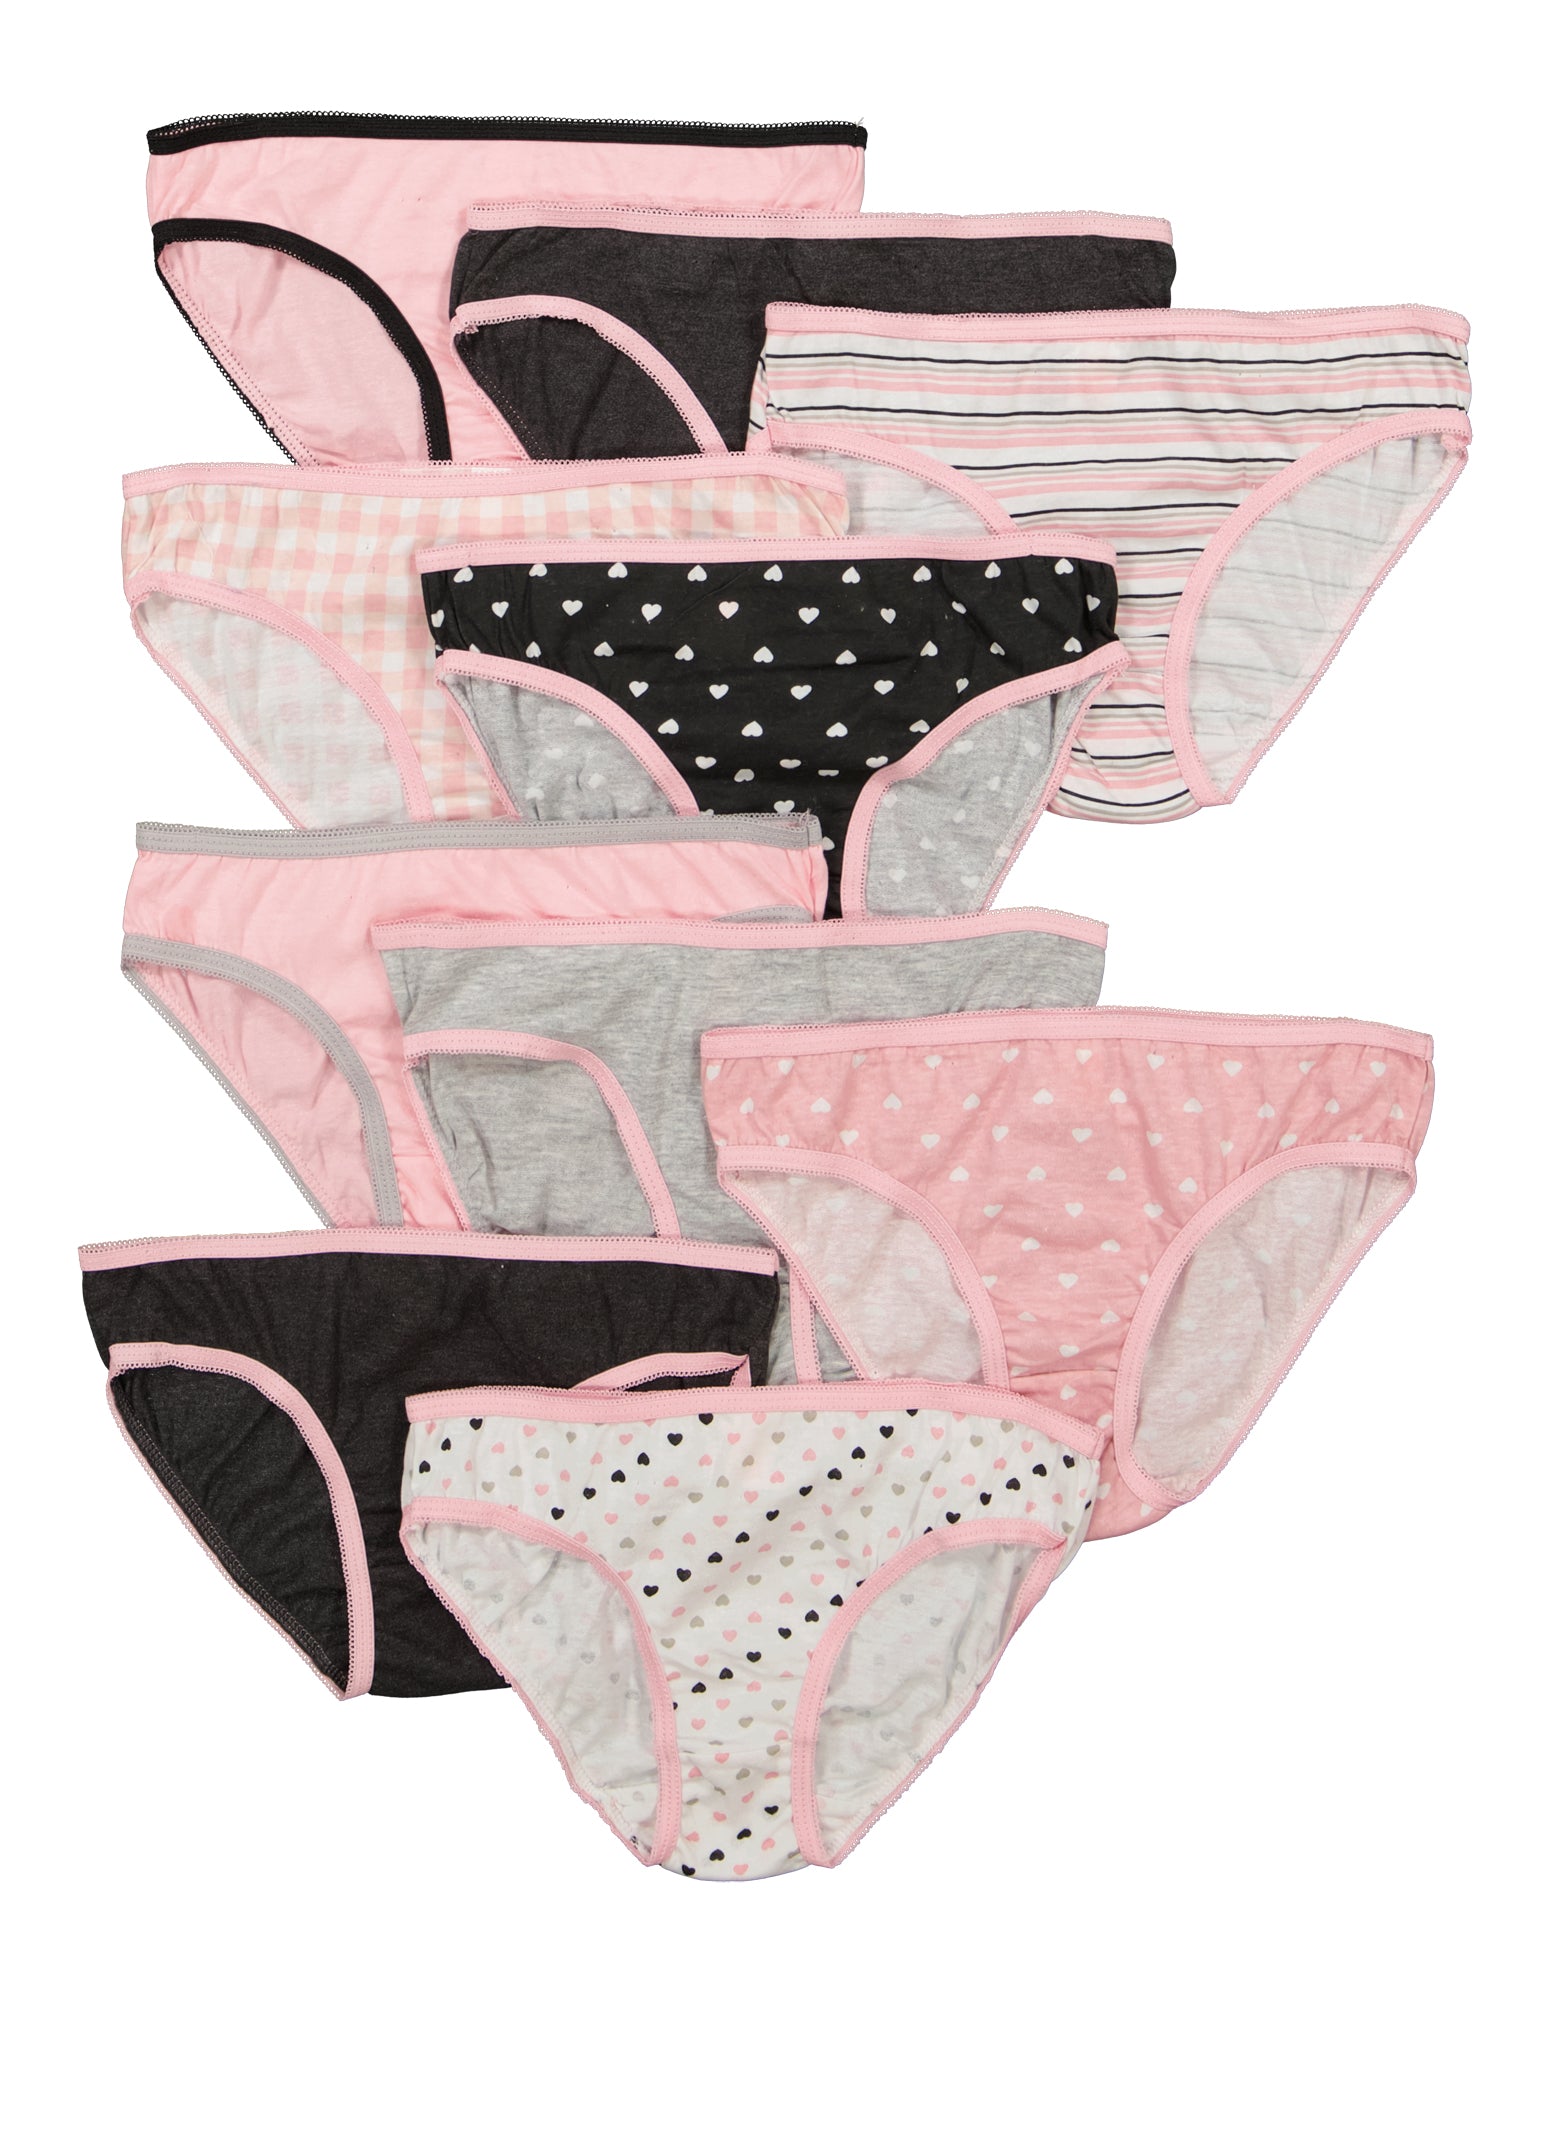 Logo Girls Underwear Panties Set in Grey and Tie Dye Multicolor